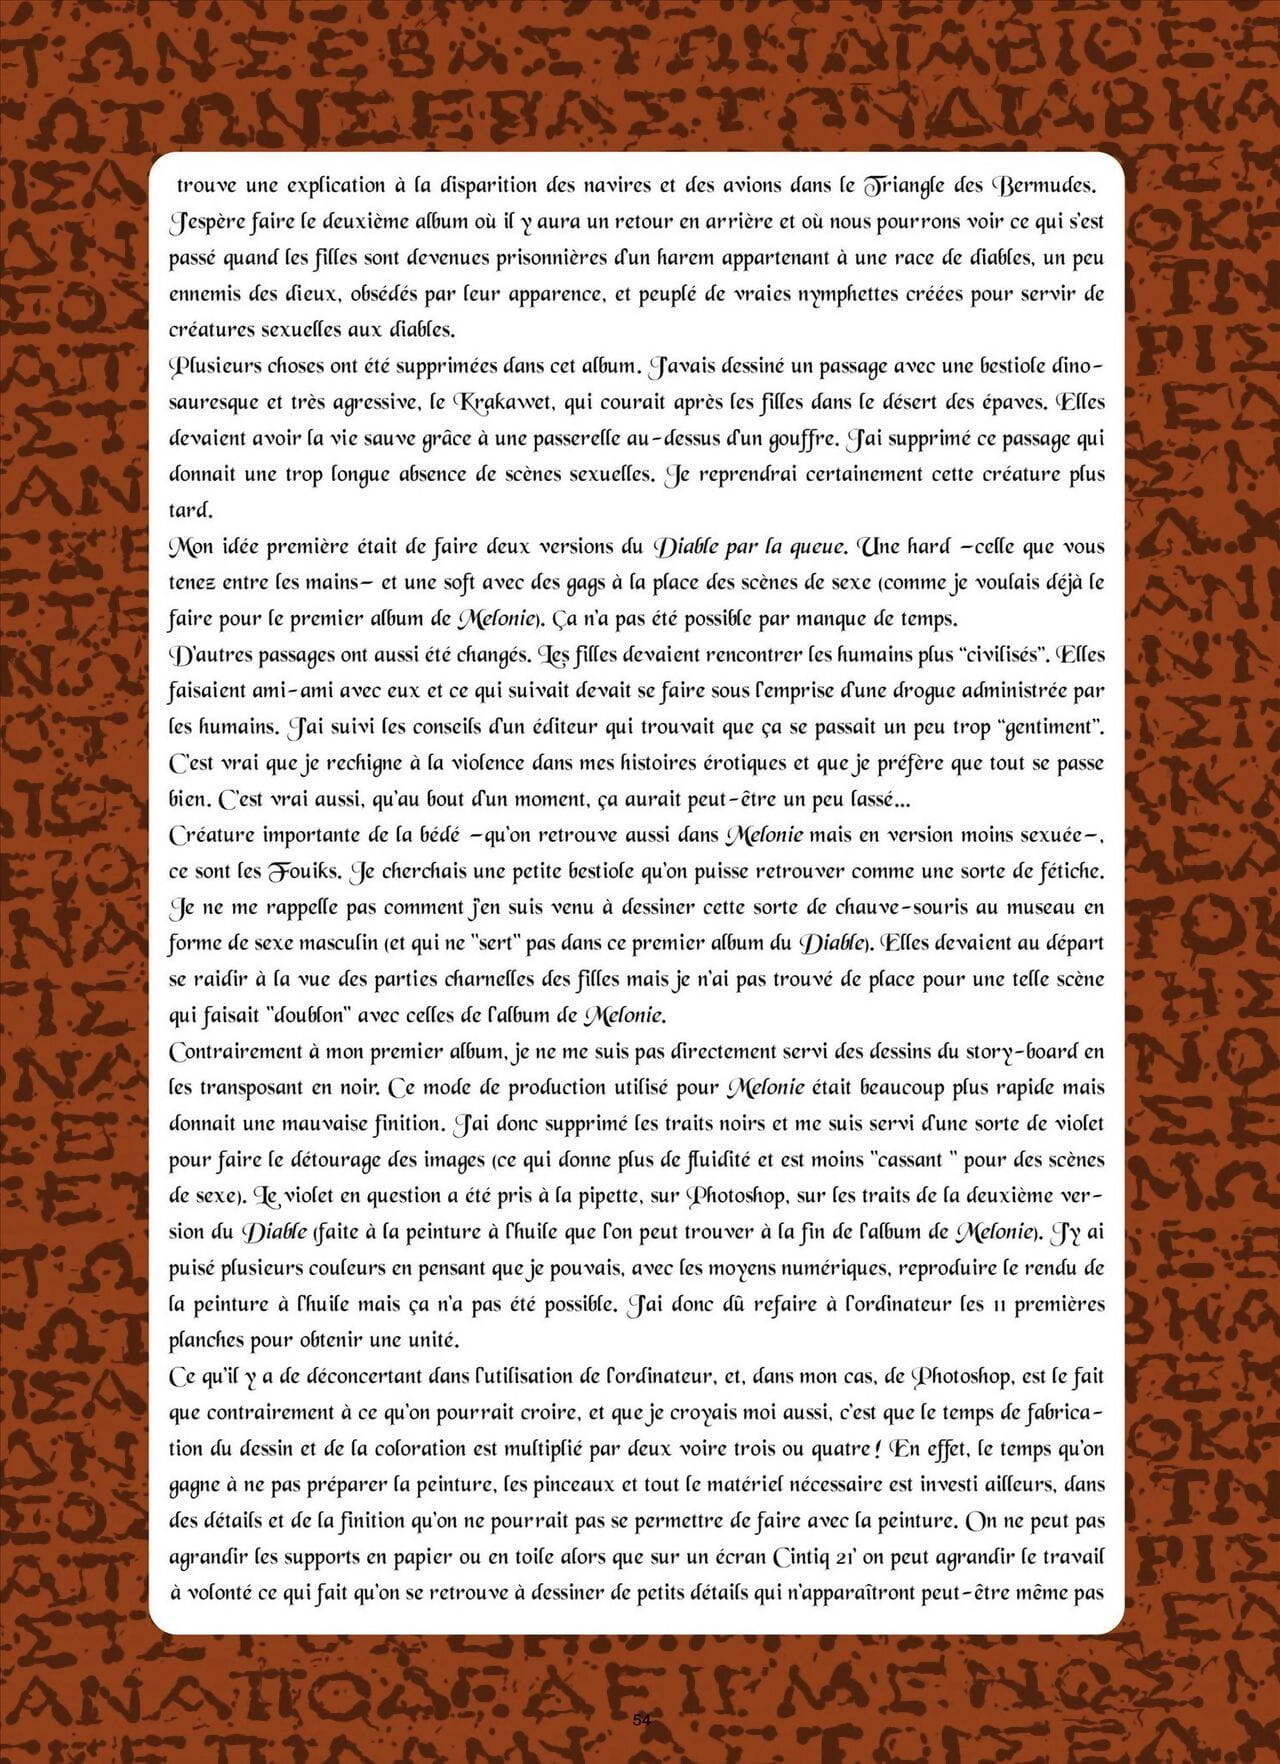 filobedo Le ディアブル、アクアク par la キュー デジタルフランス語 部分 3